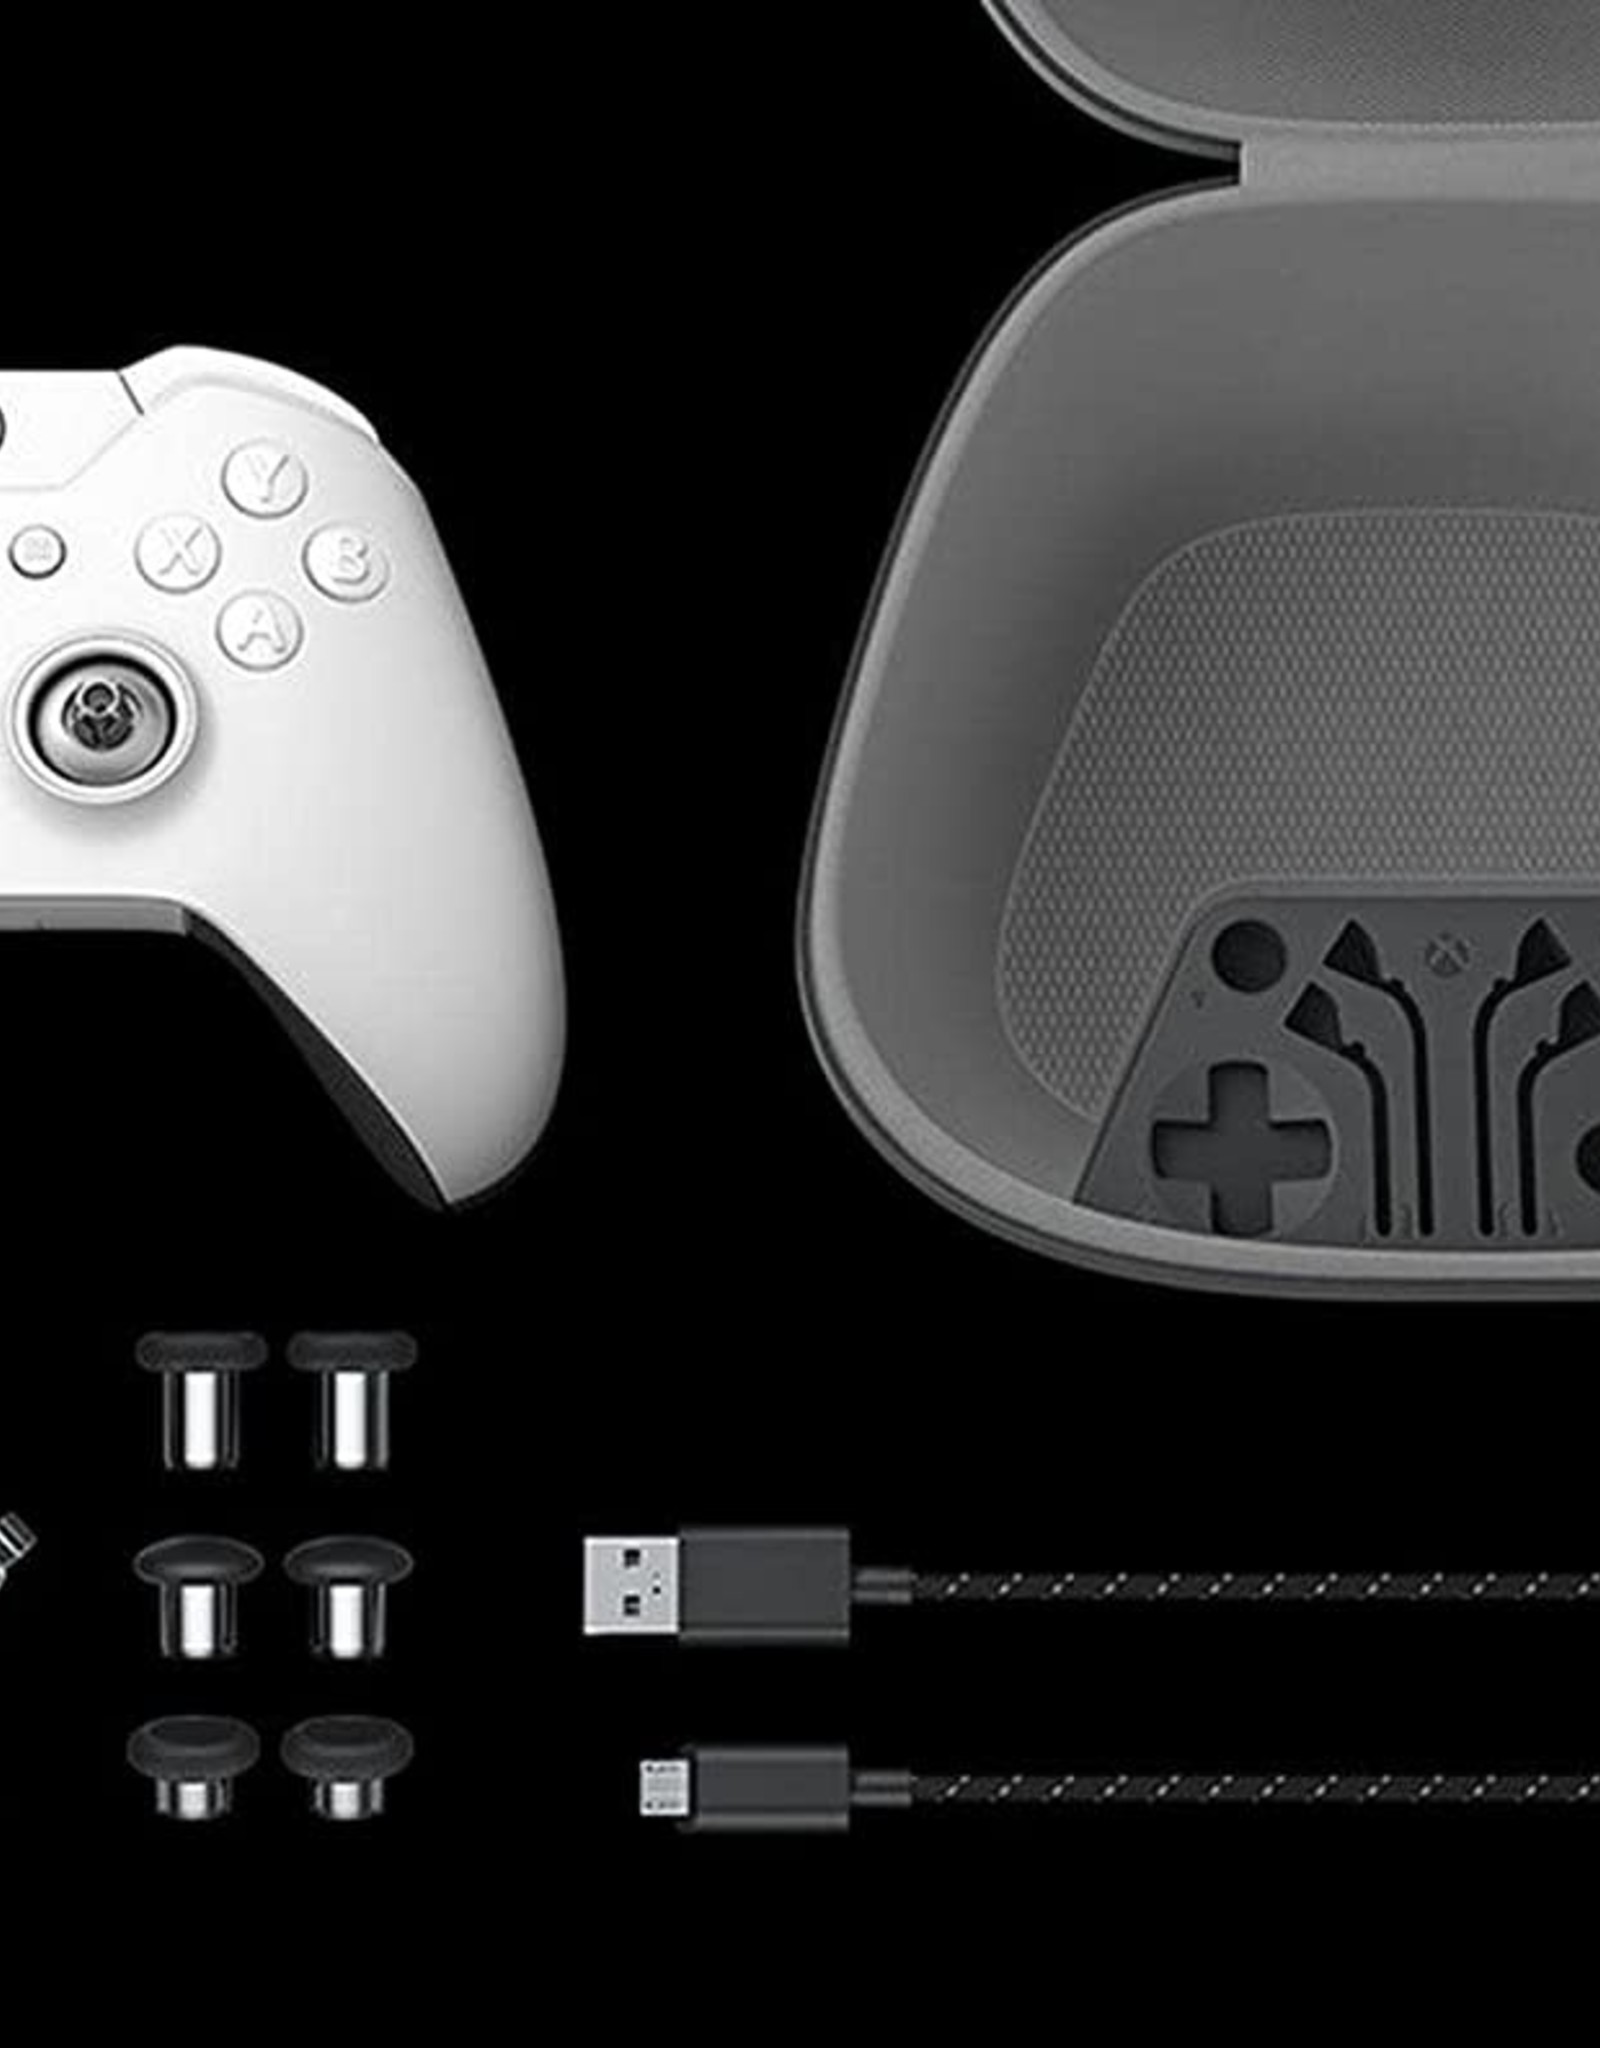 Microsoft Xbox Elite Series 2 Wireless Controller (White)